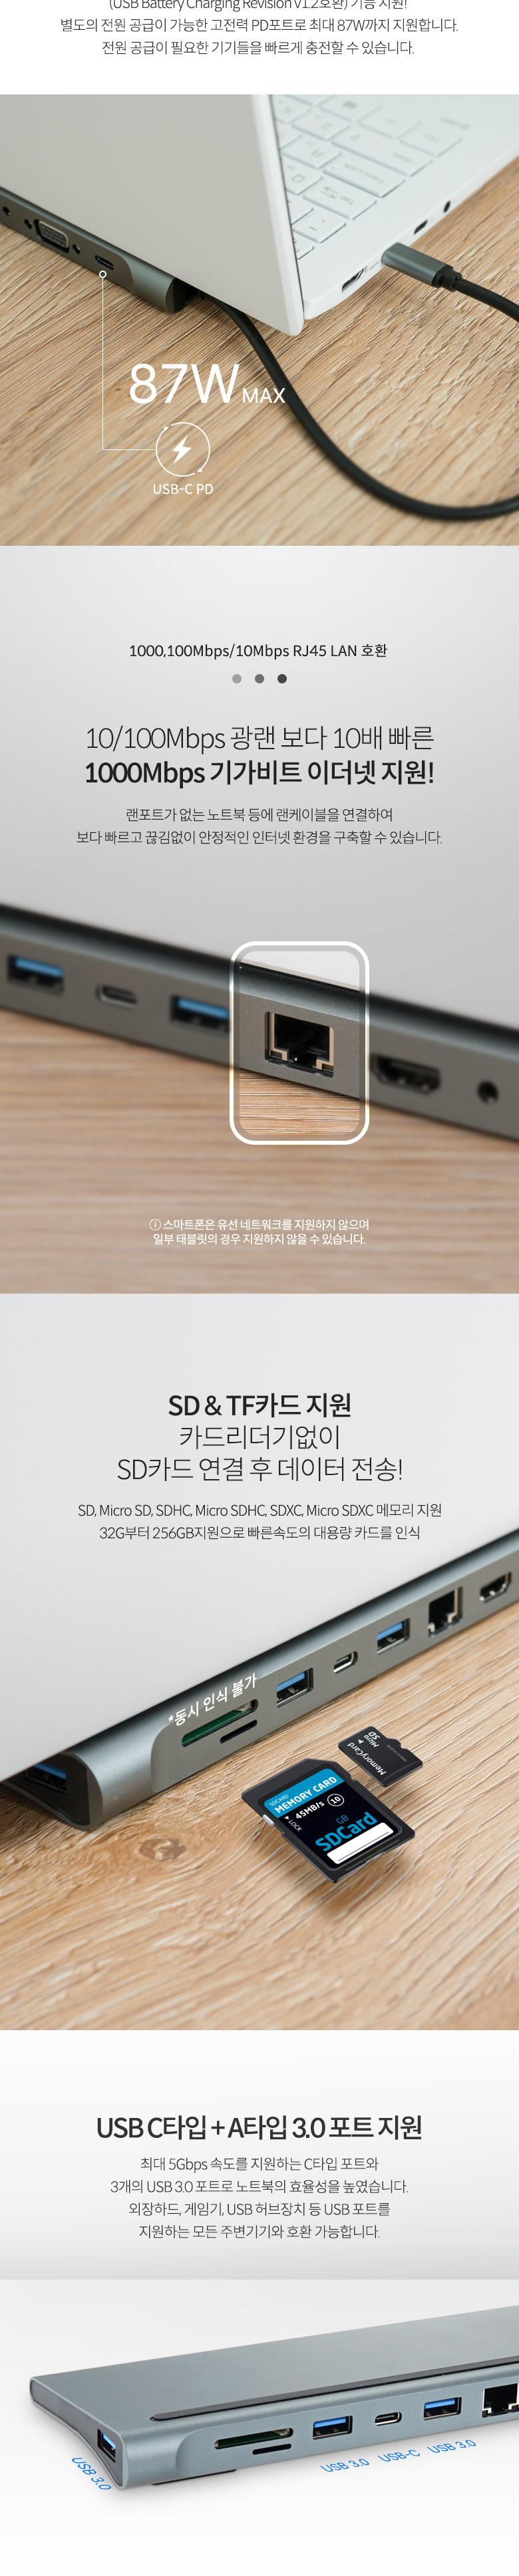 Coms USB CŸ Ƽ  ŷ̼ 11 in 1 HDMI 4K 30Hz VGA USB 3.1(Type C) PD SD TF Card Micro SD USB 3.0 3.5mm RJ45 ̴  LAN ŷ̼ CŸԵŷ CŸԵŷ̼ 굵ŷ̼ Ƽ굵ŷ̼ Ƽ Ƽŷ̼ CŸ굵ŷ̼ CŸԸƼ굵ŷ̼ CŸԸƼ